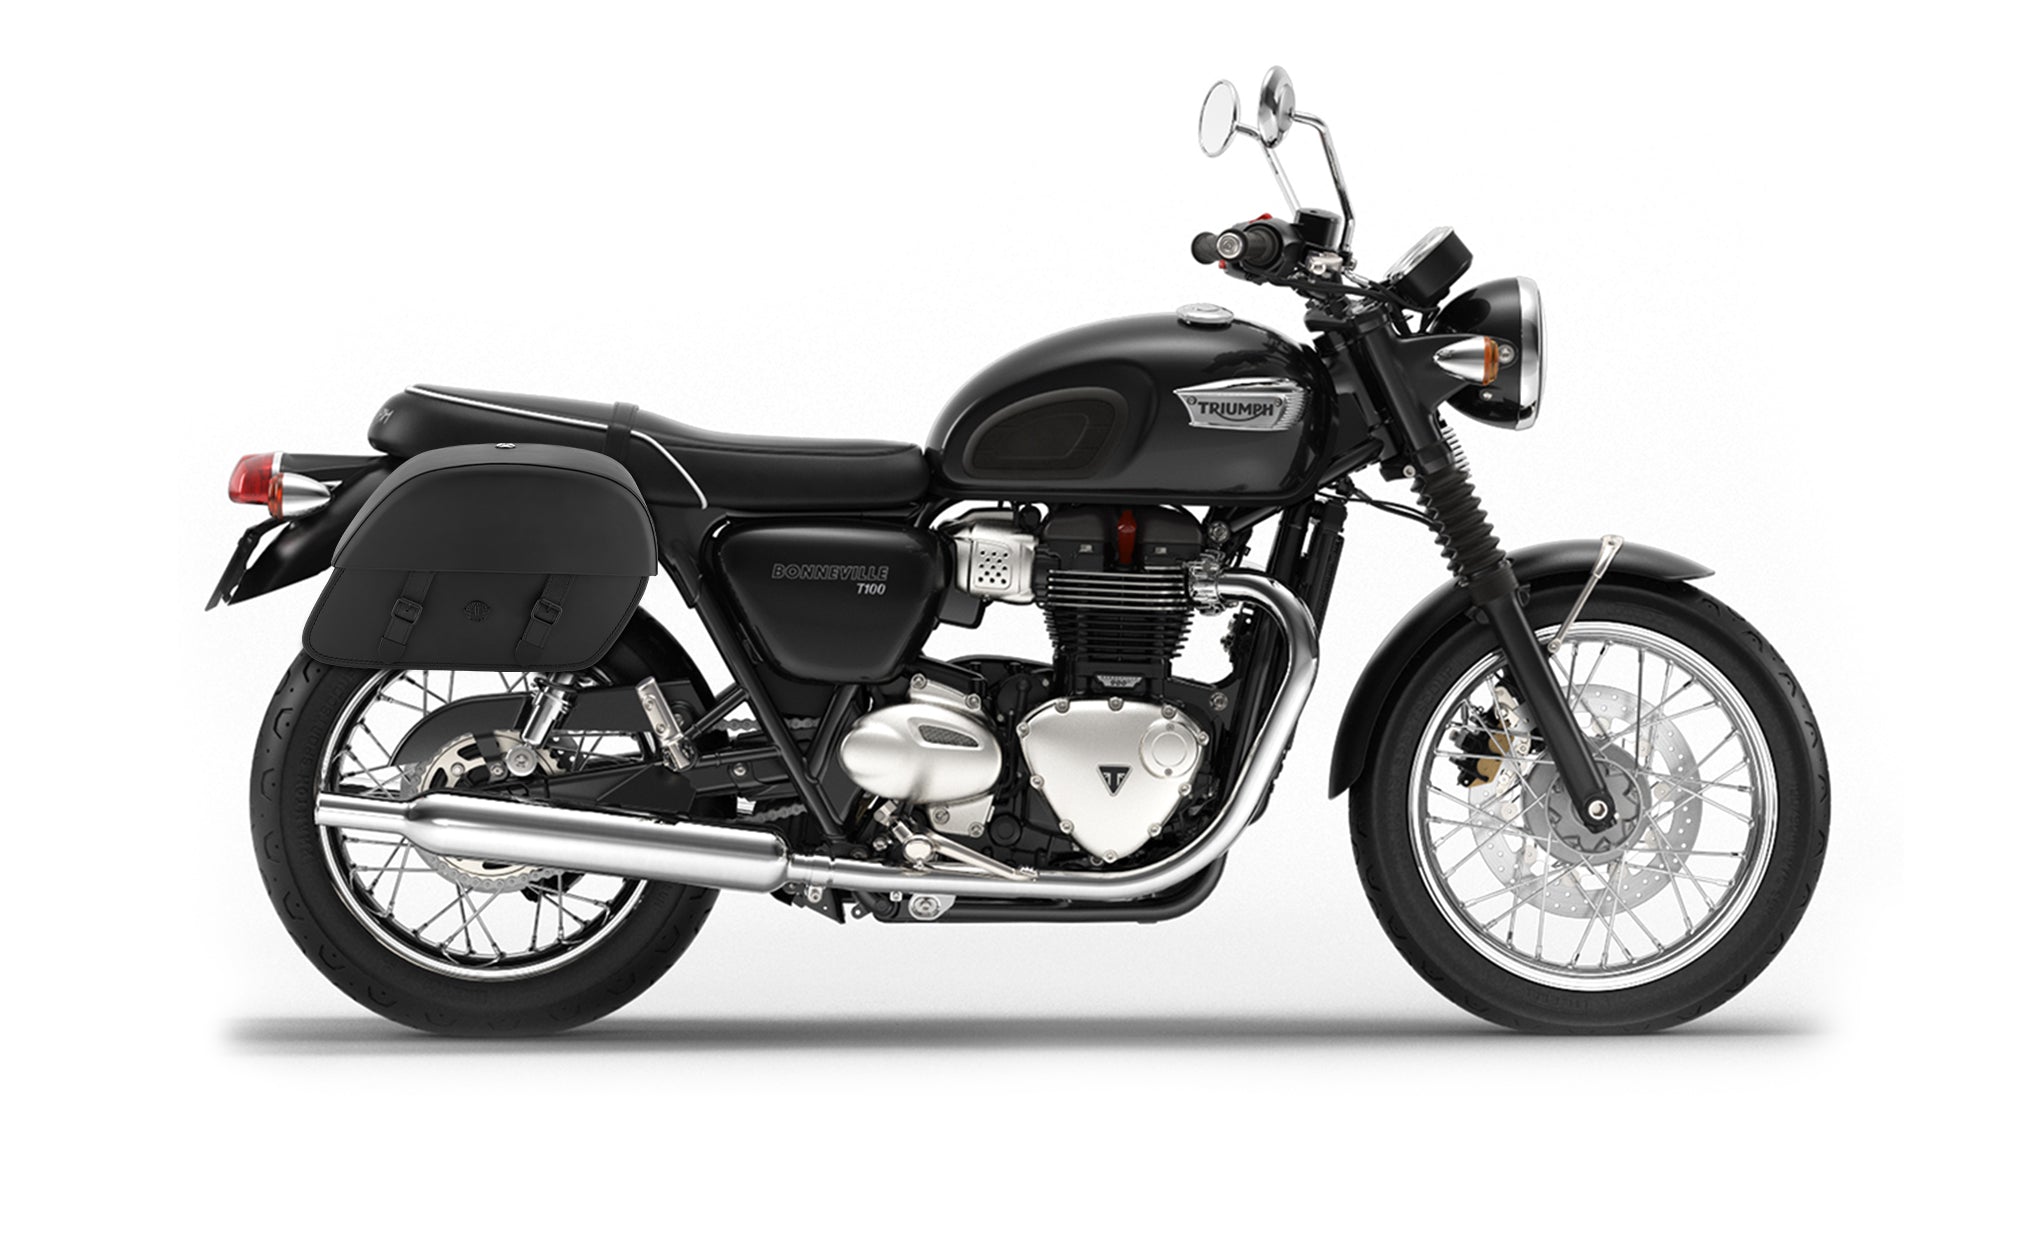 28L - Baelor Medium Quick Mount Triumph Bonneville T100 Motorcycle Saddlebags @expand